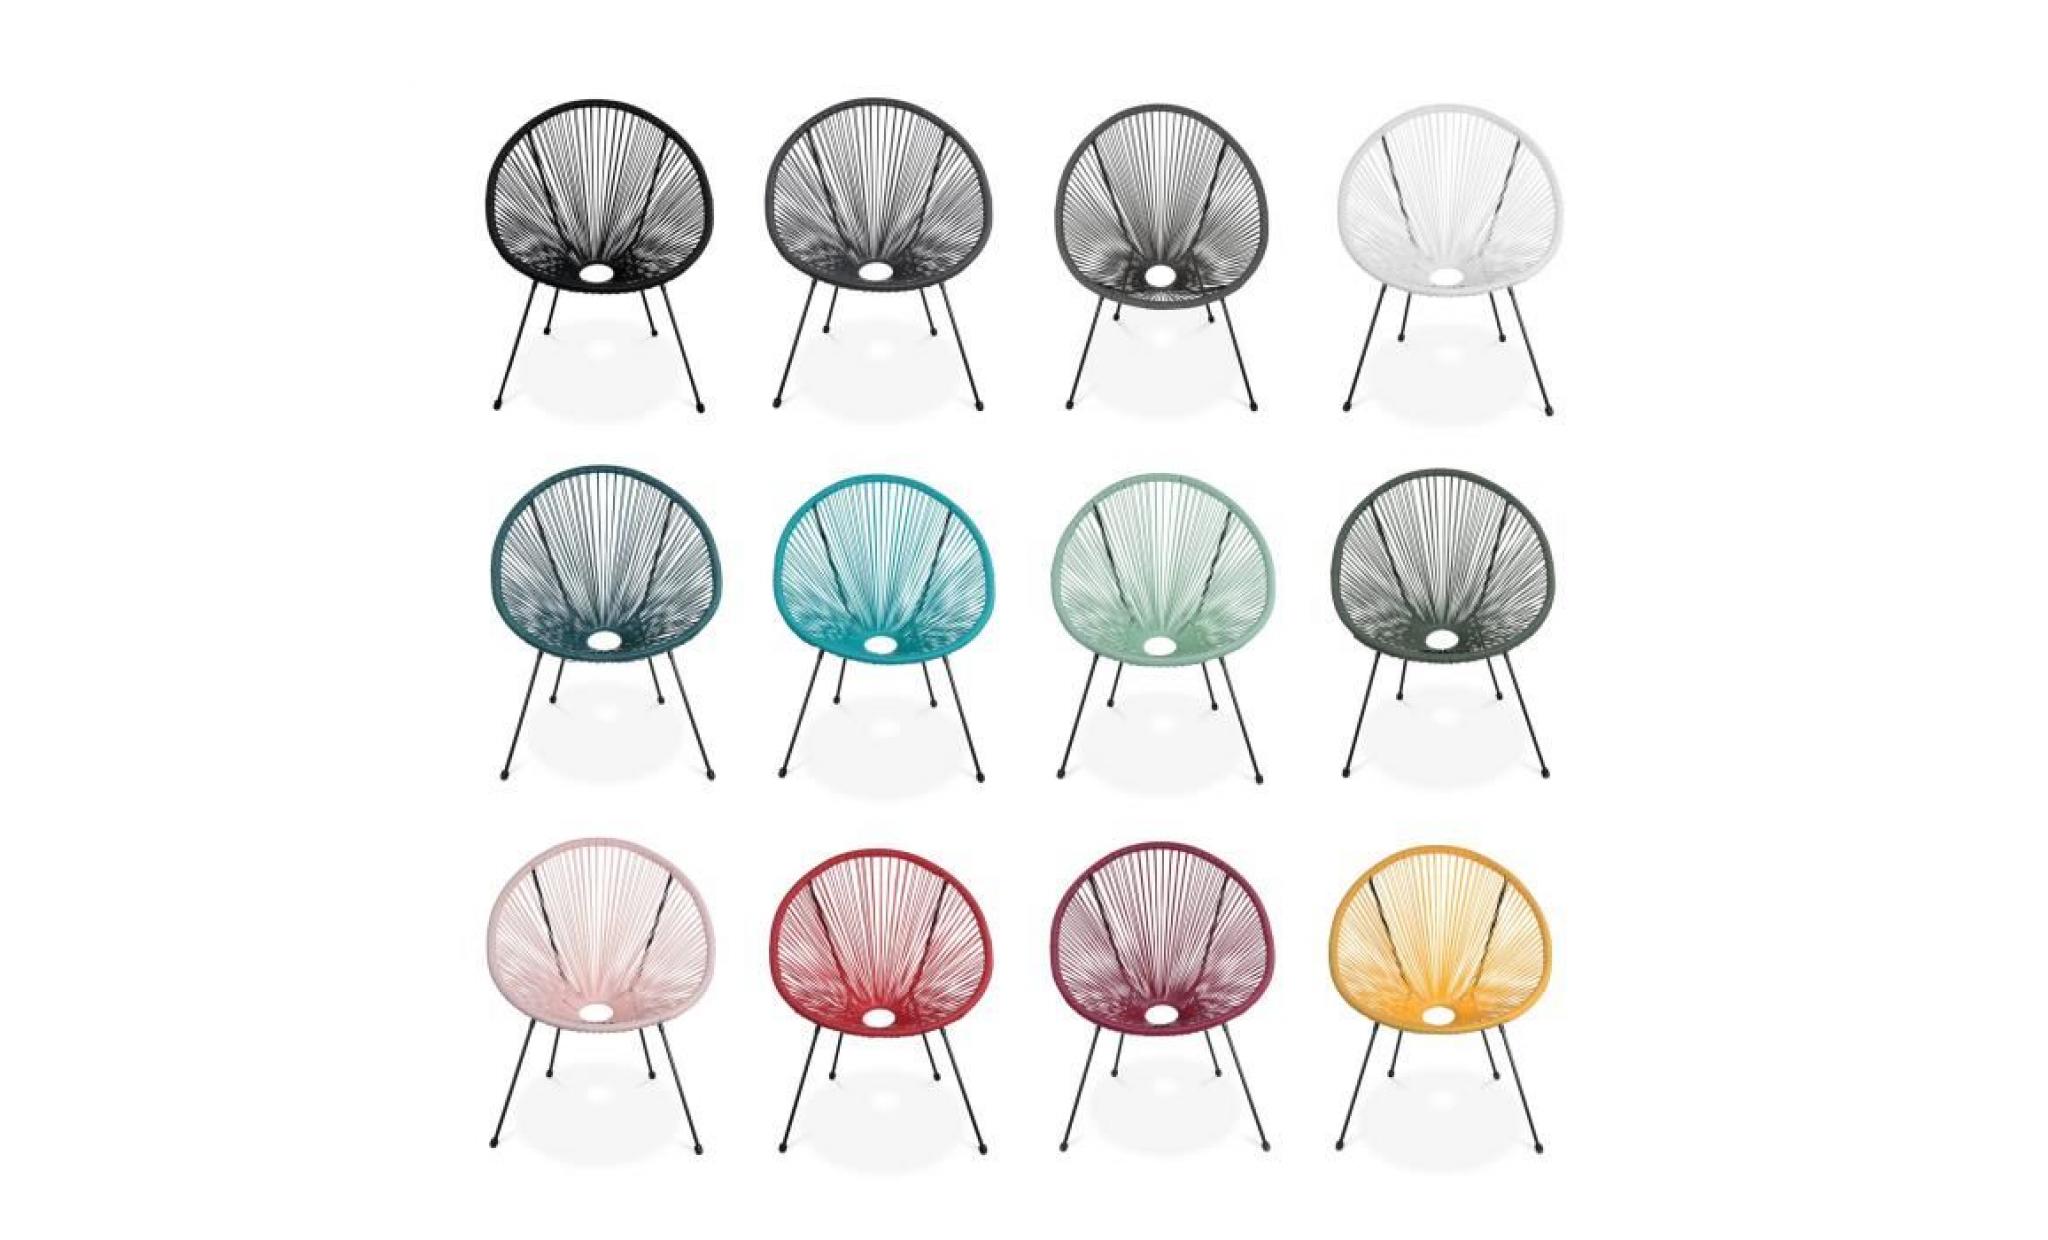 lot de 2 fauteuils design oeuf   acapulco rouge framboise   fauteuils 4 pieds design rétro, cordage plastique, intérieur / extérieur pas cher